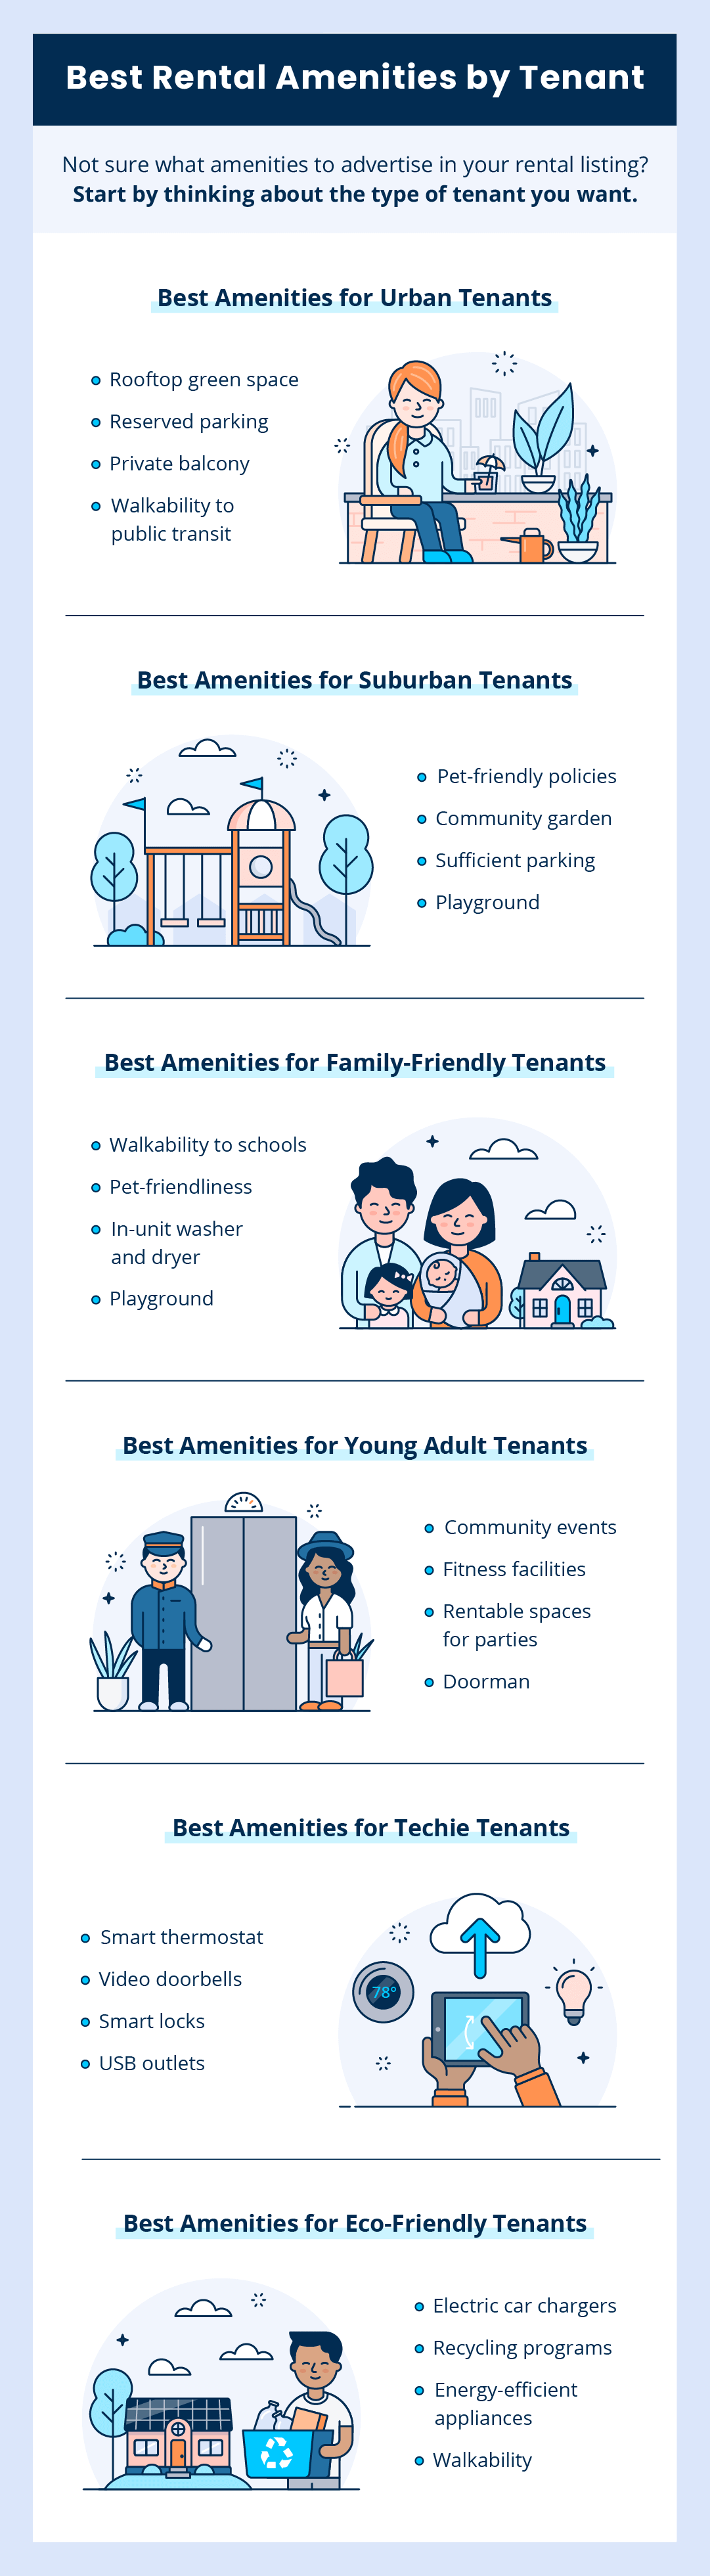 List of best rental amenities by tenant type